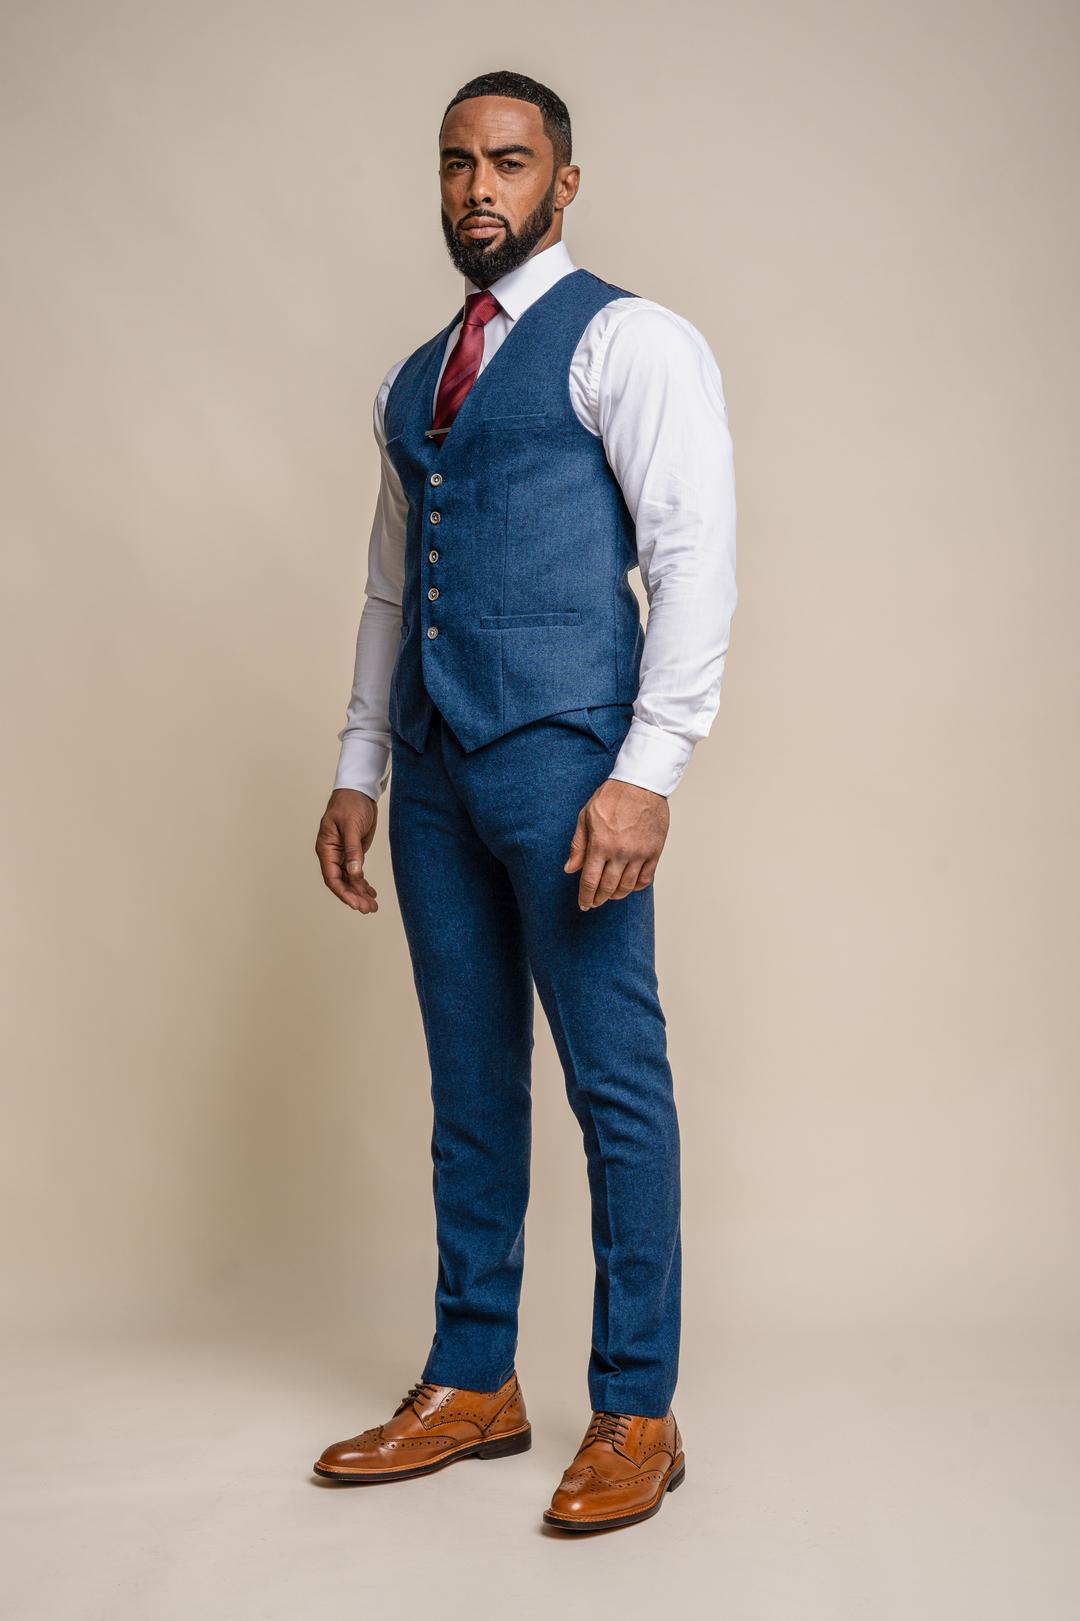 Men's Tweed Wool Slim Fit Formal Wedding Business Suit 3 Piece Set